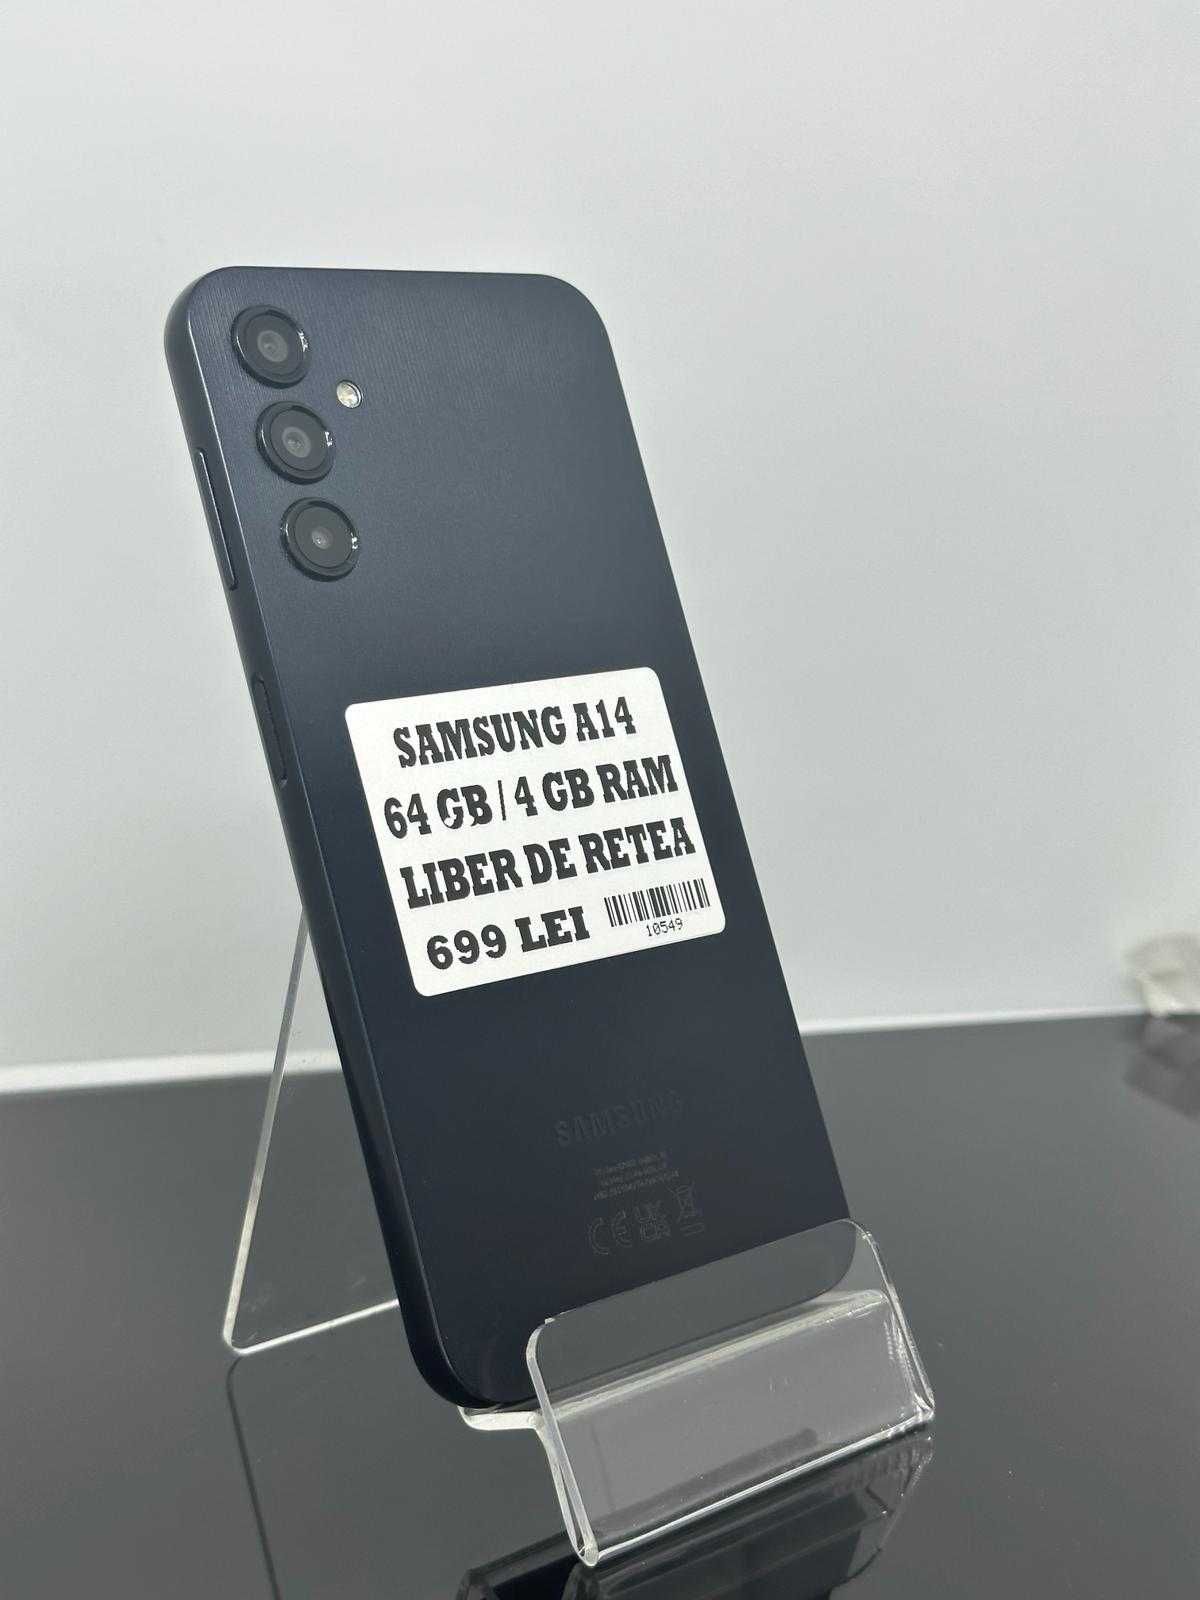 Samsung A14 64gb liber de retea